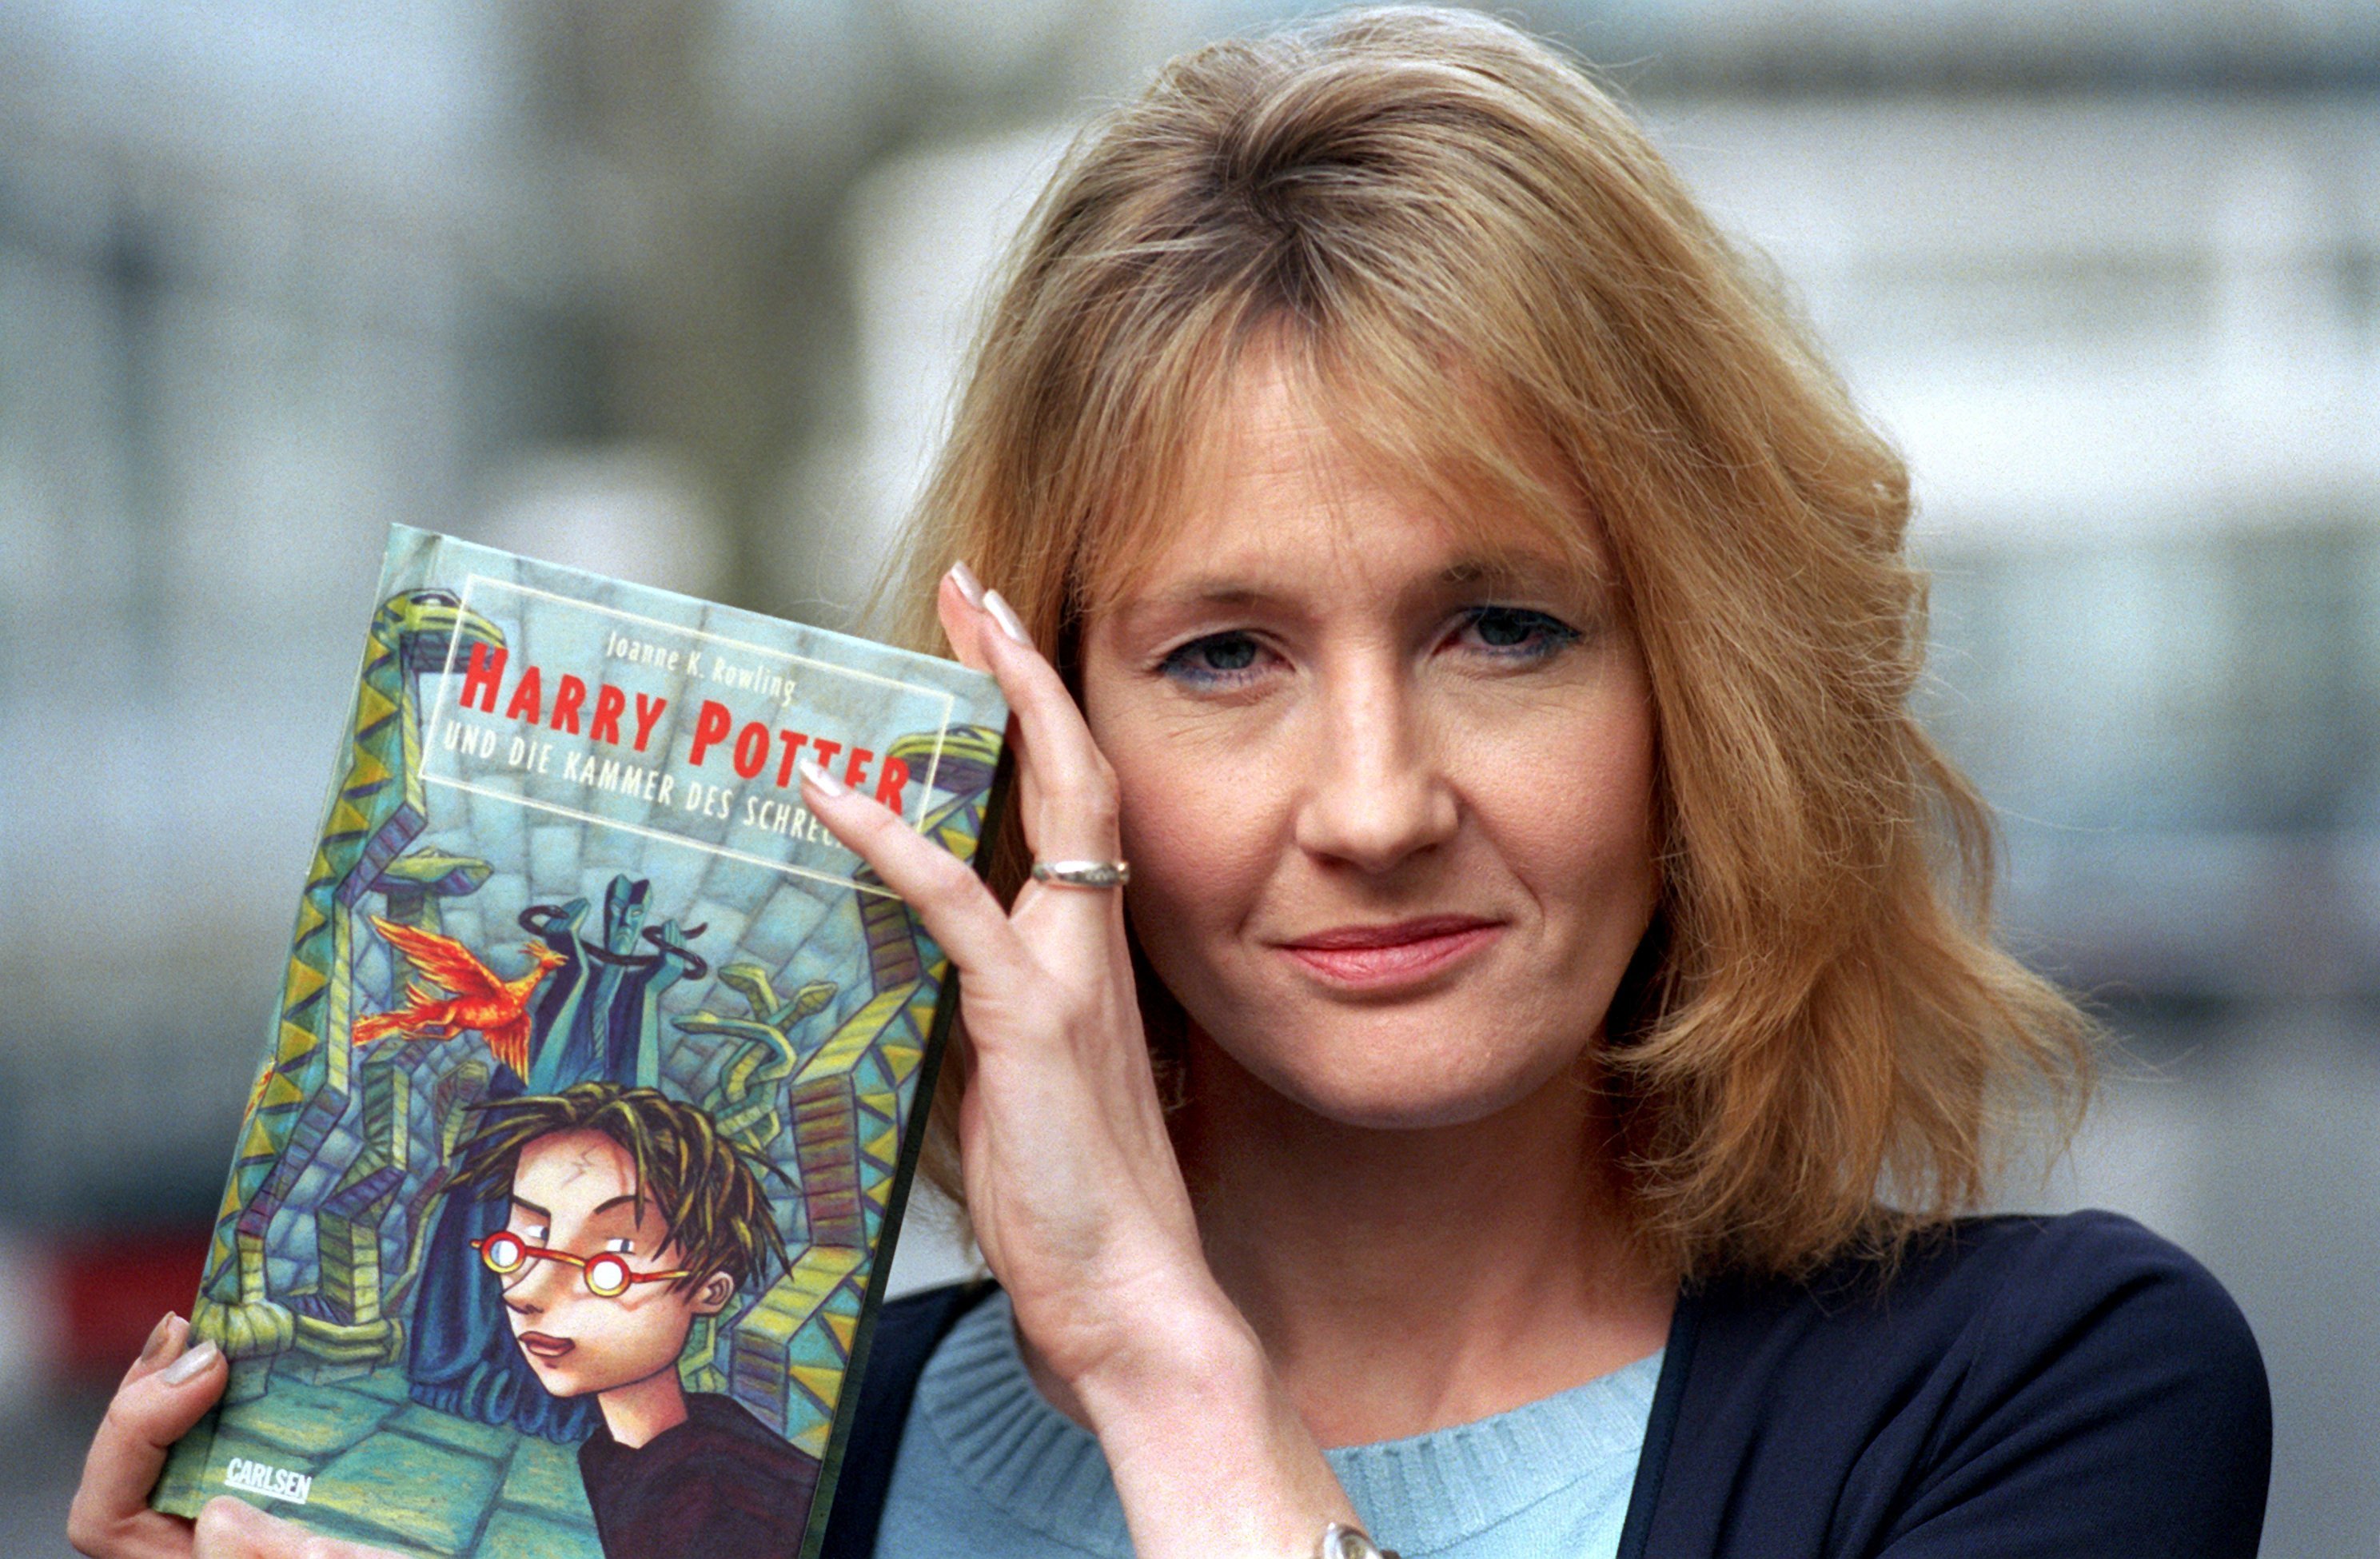 La exitosa escritora escocesa Joanne K. Rowling con su libro "Harry Potter y la cámara de los secretos" el 20 de marzo de 2000 en la Casa de Literatura de Frankfurt. | Foto: Getty Images